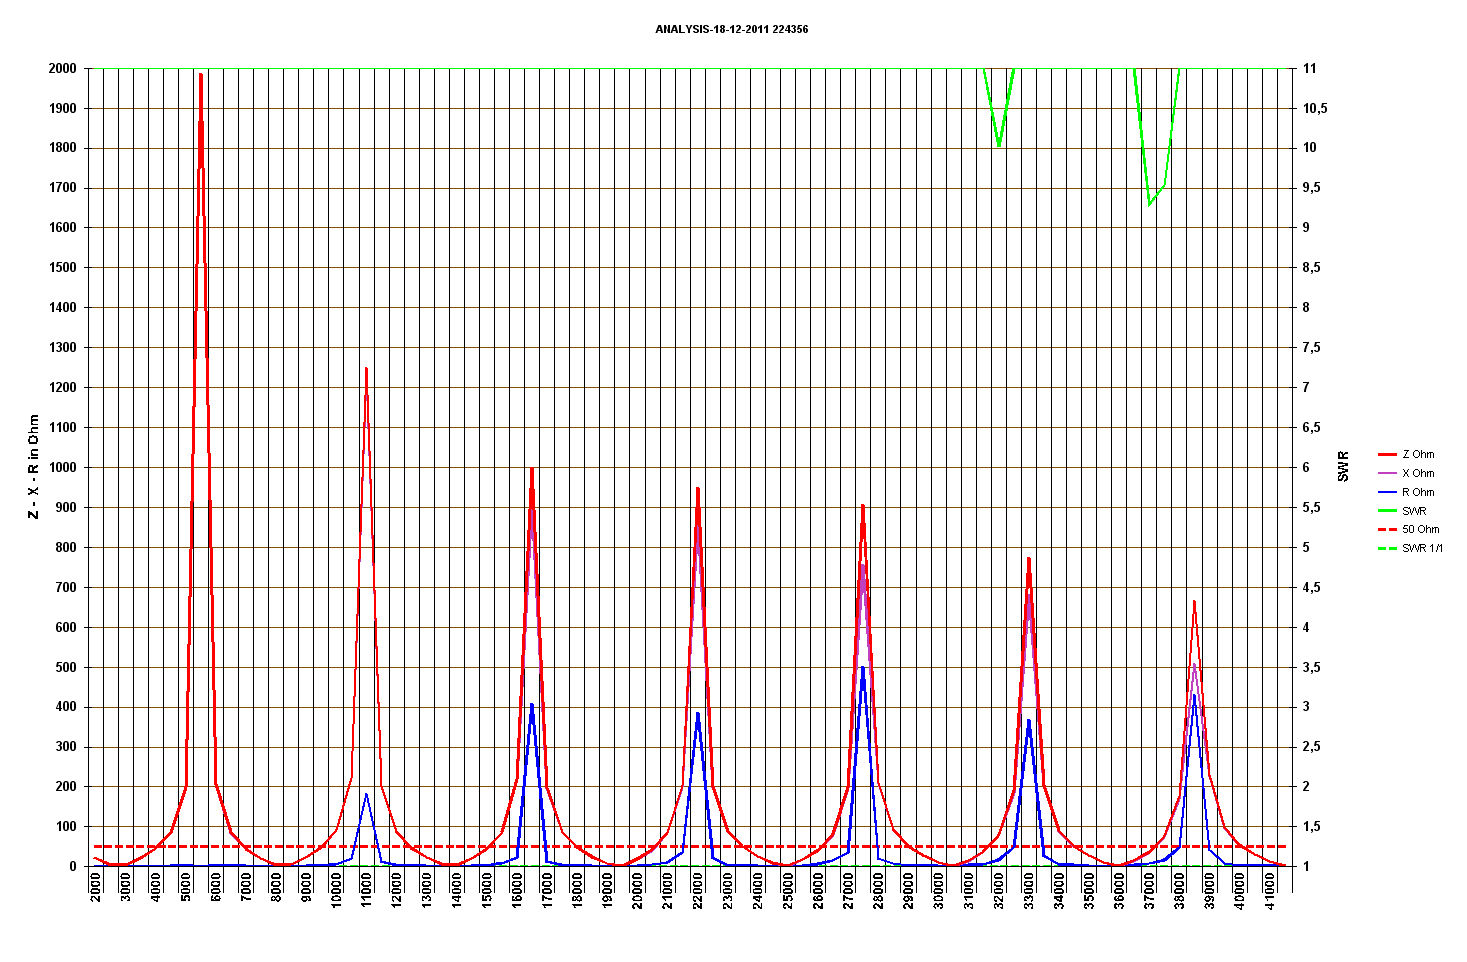 Meting van een 55 Ohm weerstand met 17 m 50 Ohm coax, Stap=500Khz, Fstart 2000Khz Observeer door de lichte mismatch, de aanpassingstransformatie van de voedingslijn in functie van de